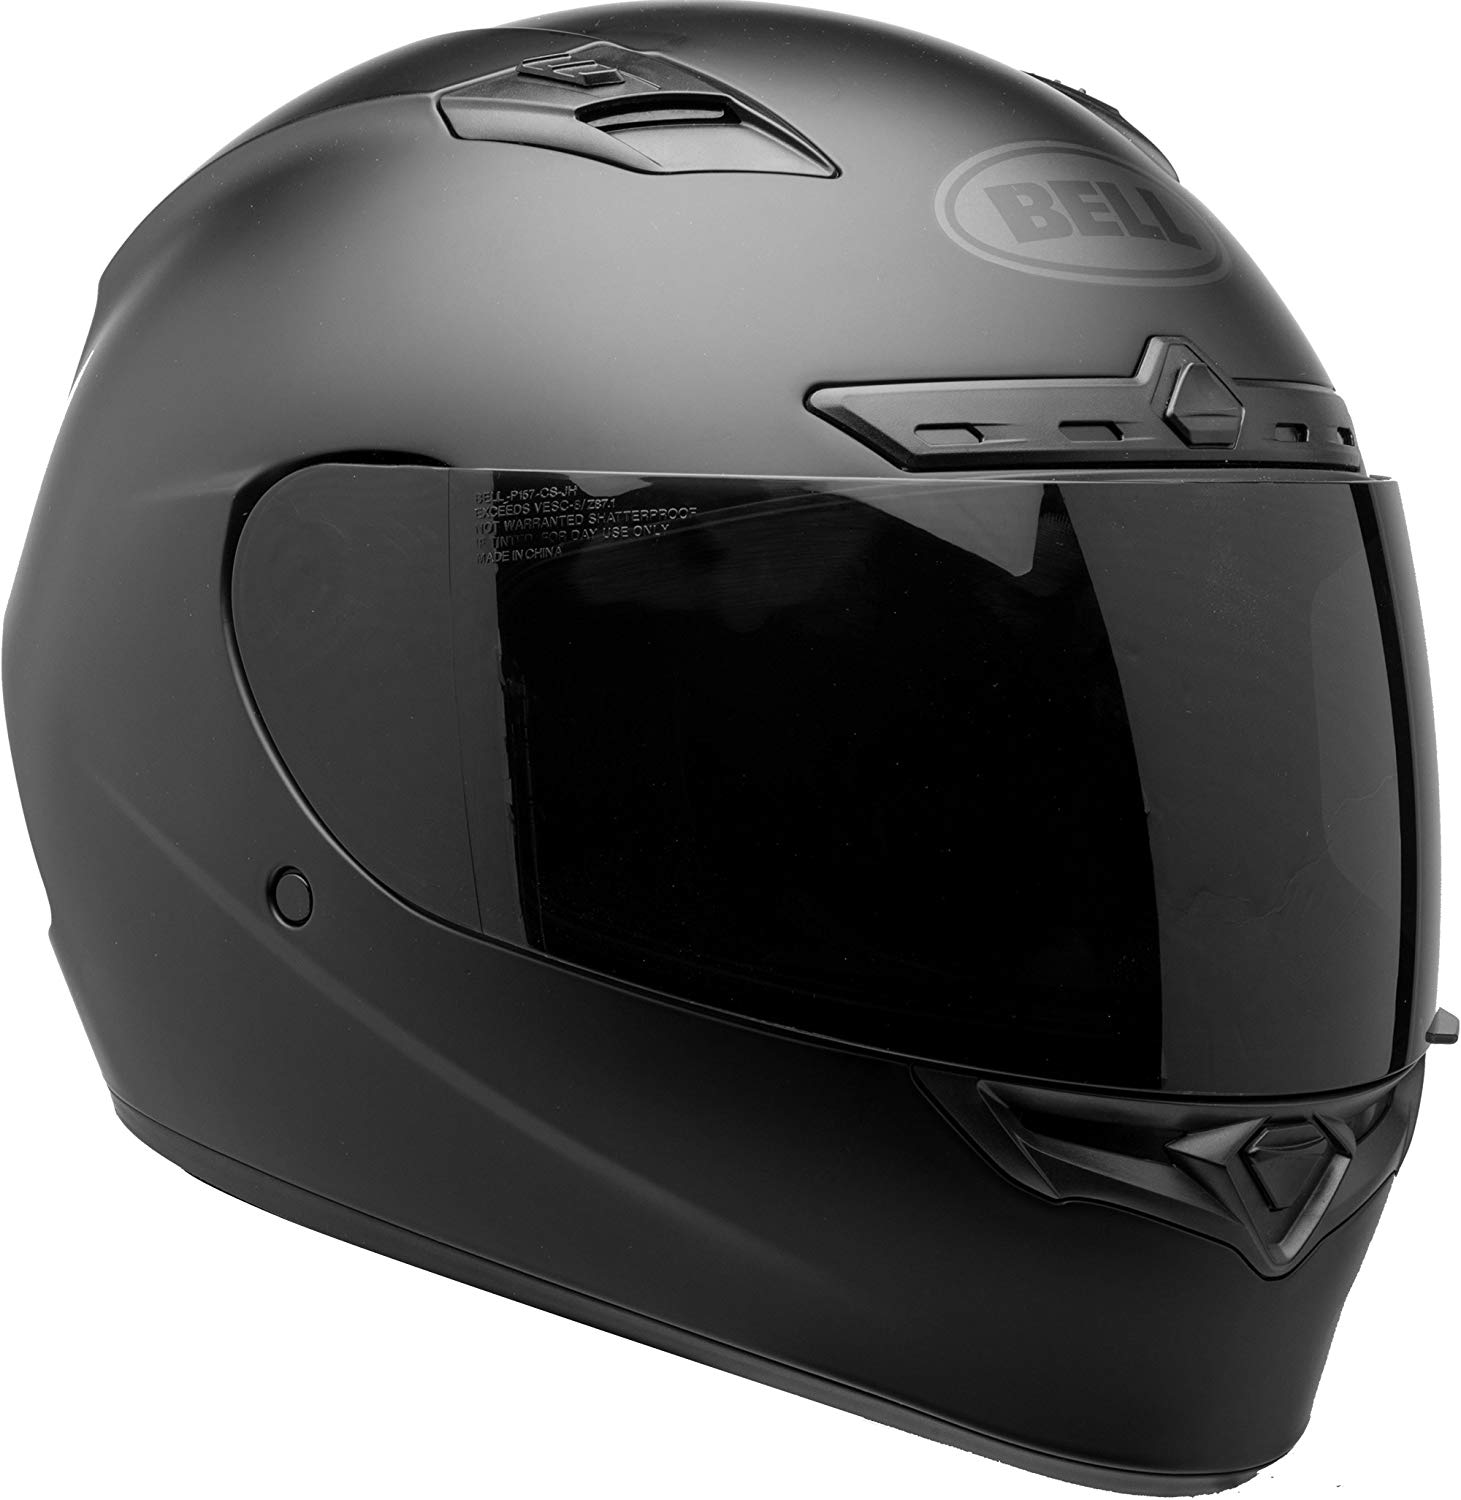 Quietest Motorcycle Helmet Under $200:11 Best Quiet Picks - Soundproof Empire